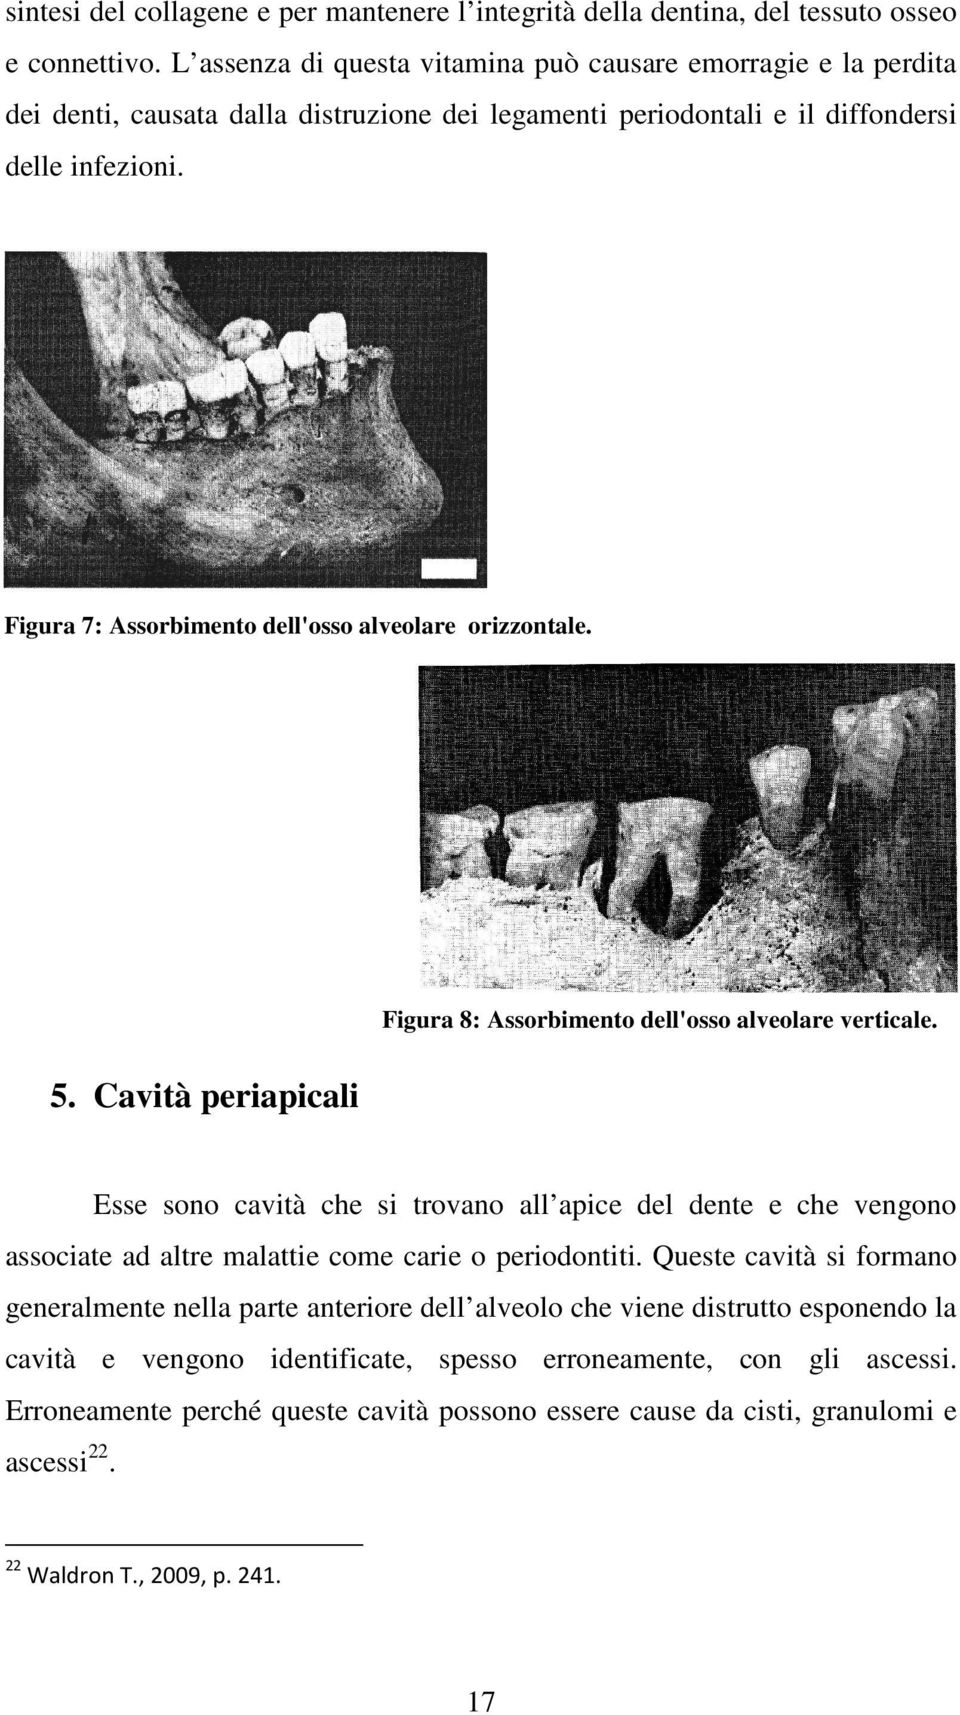 Figura 7: Assorbimento dell'osso alveolare orizzontale. 5. Cavità periapicali Figura 8: Assorbimento dell'osso alveolare verticale.